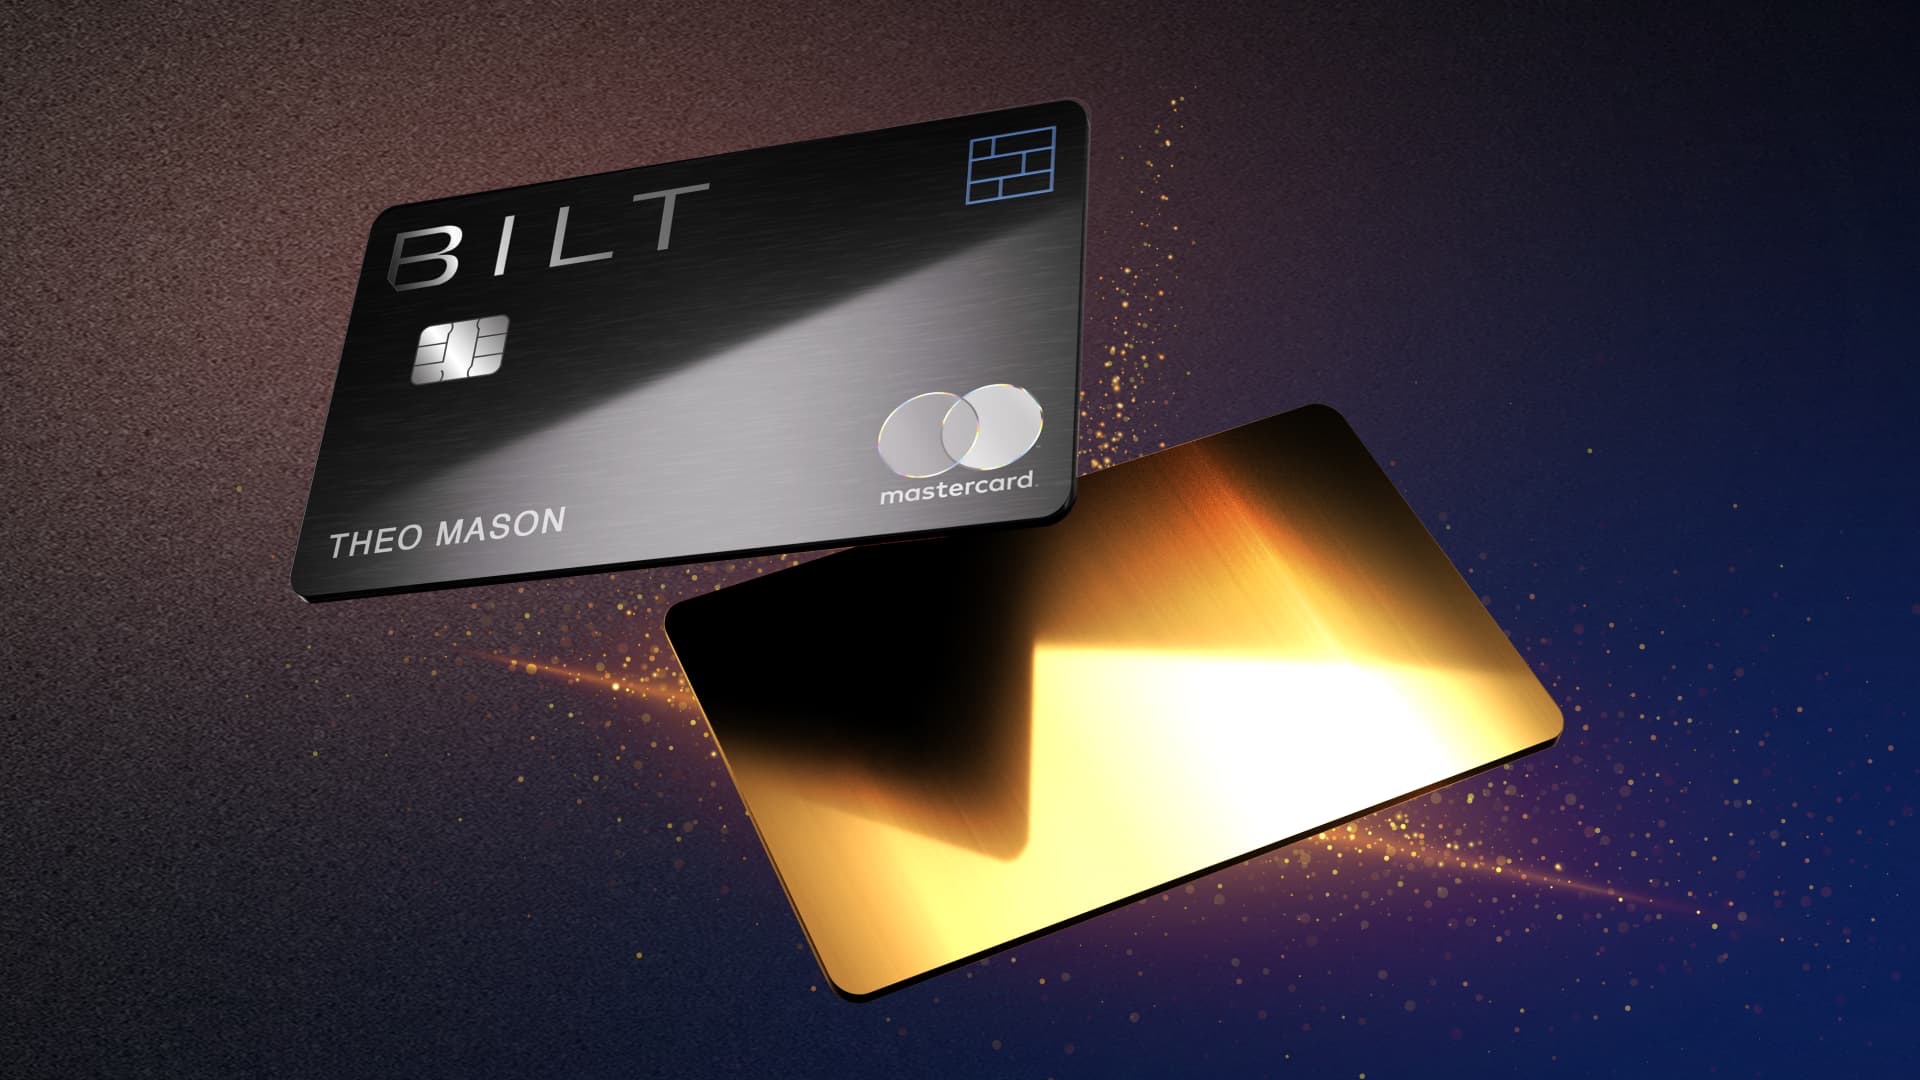 BILT Credit Card Image.